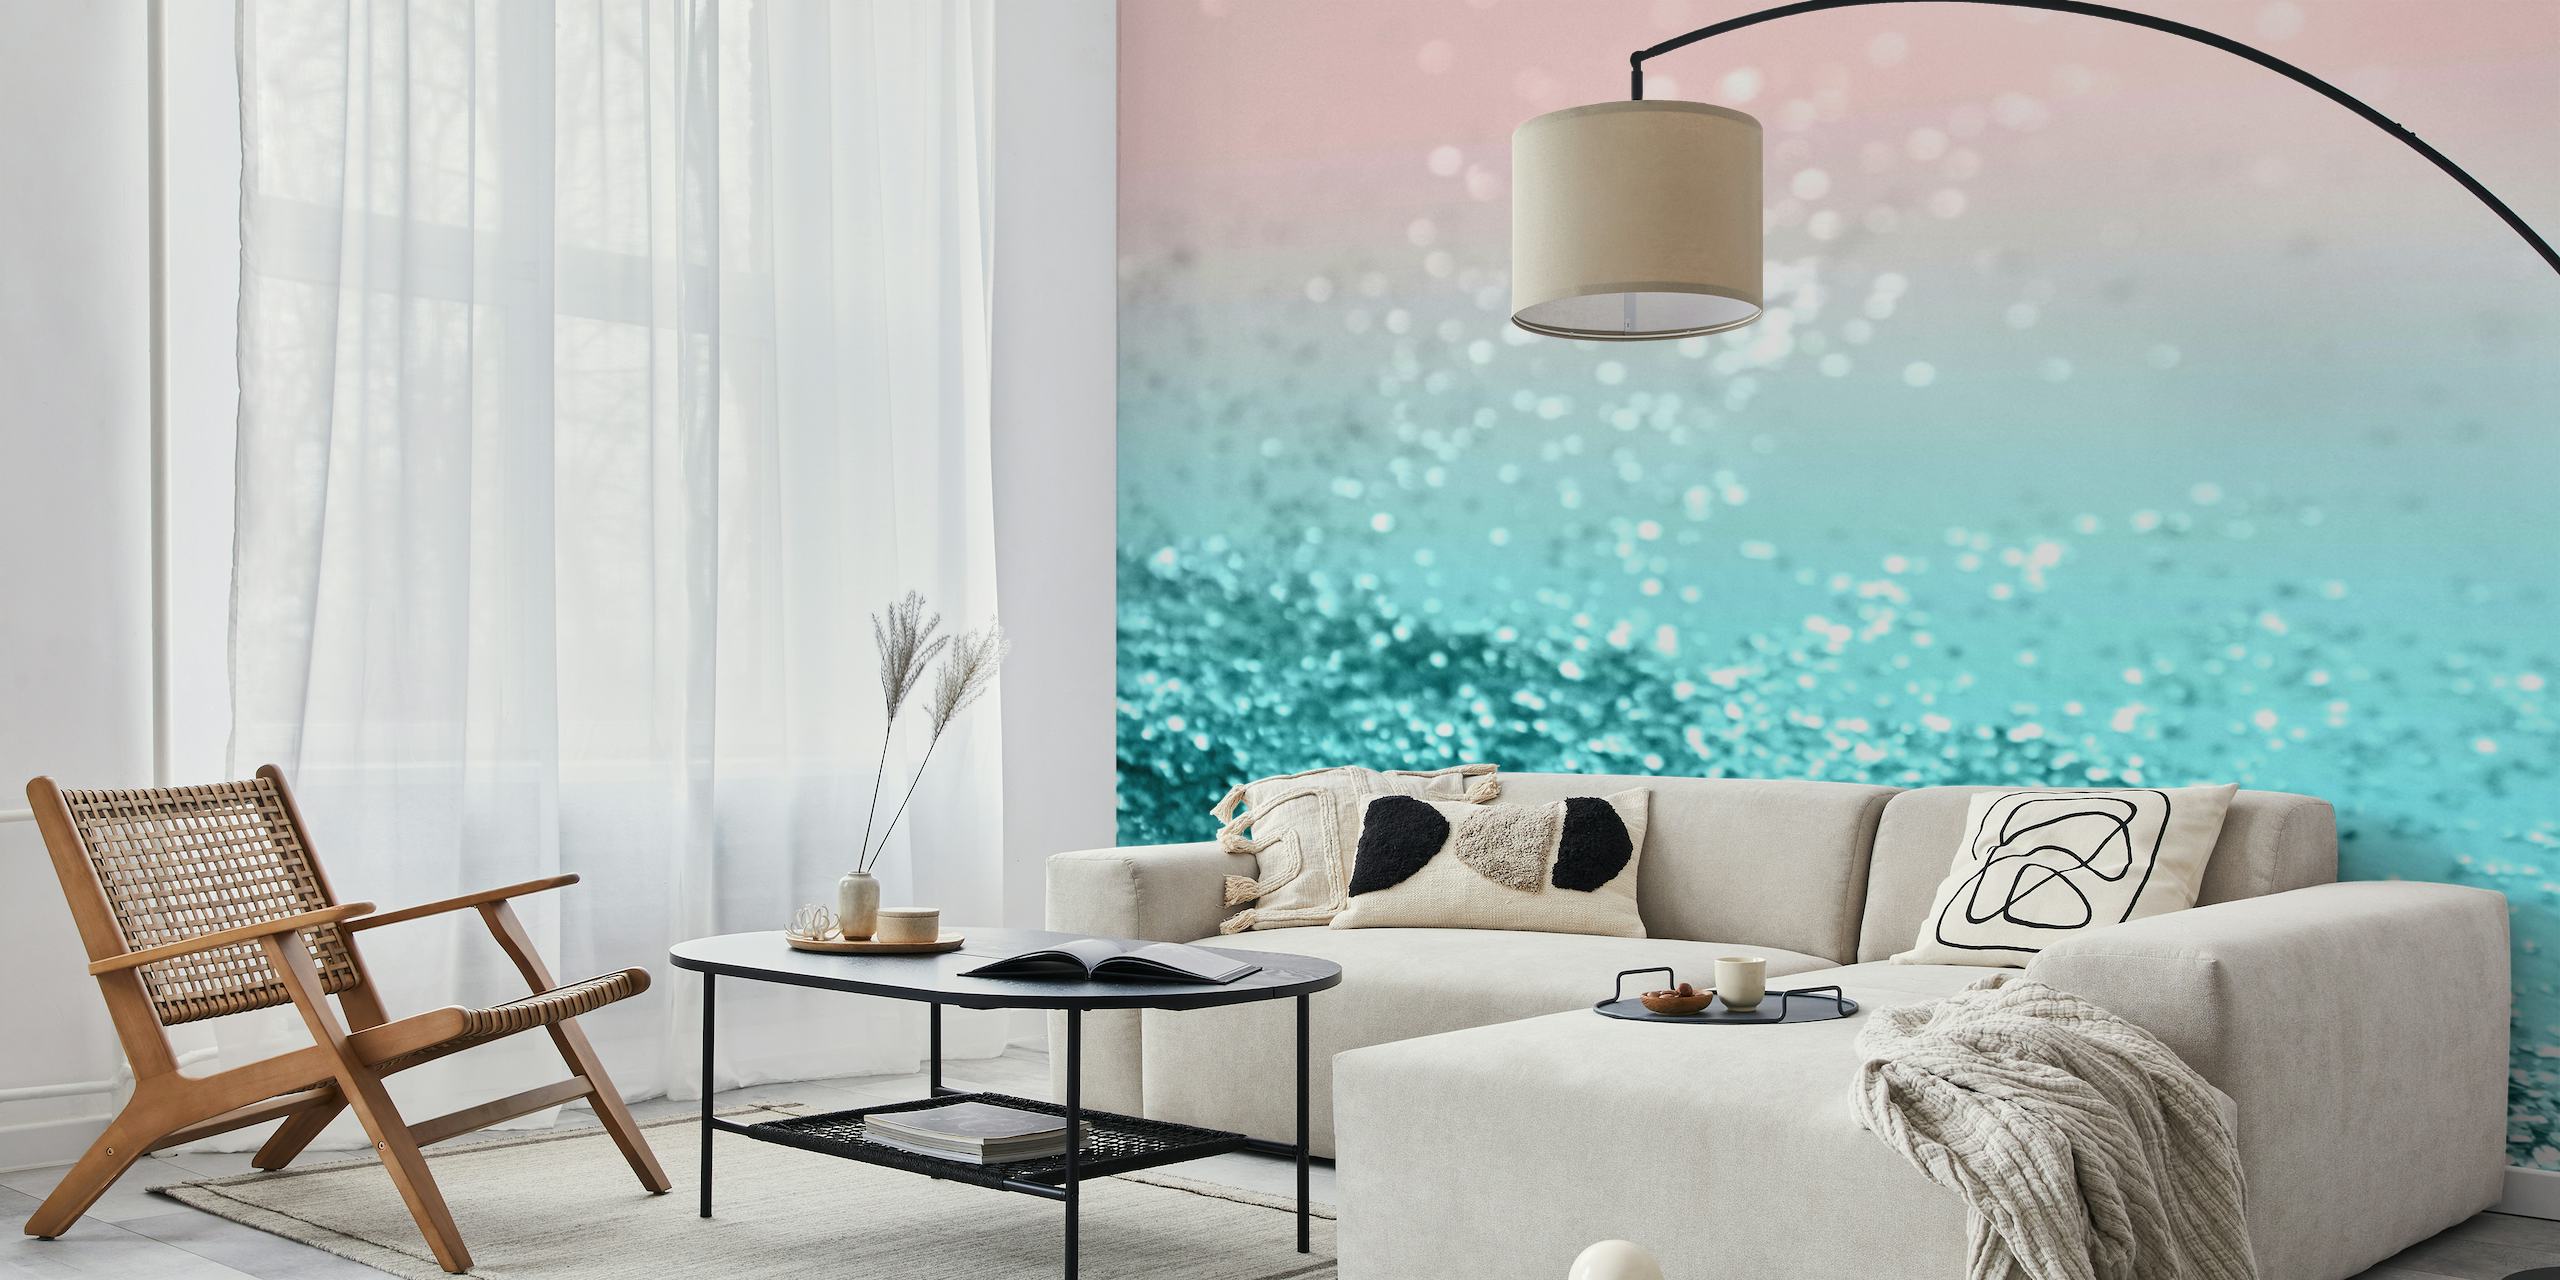 Fototapeta s přechodem od akvamarínu do růžové s třpytivou texturou připomínající tropické letní pobřeží.